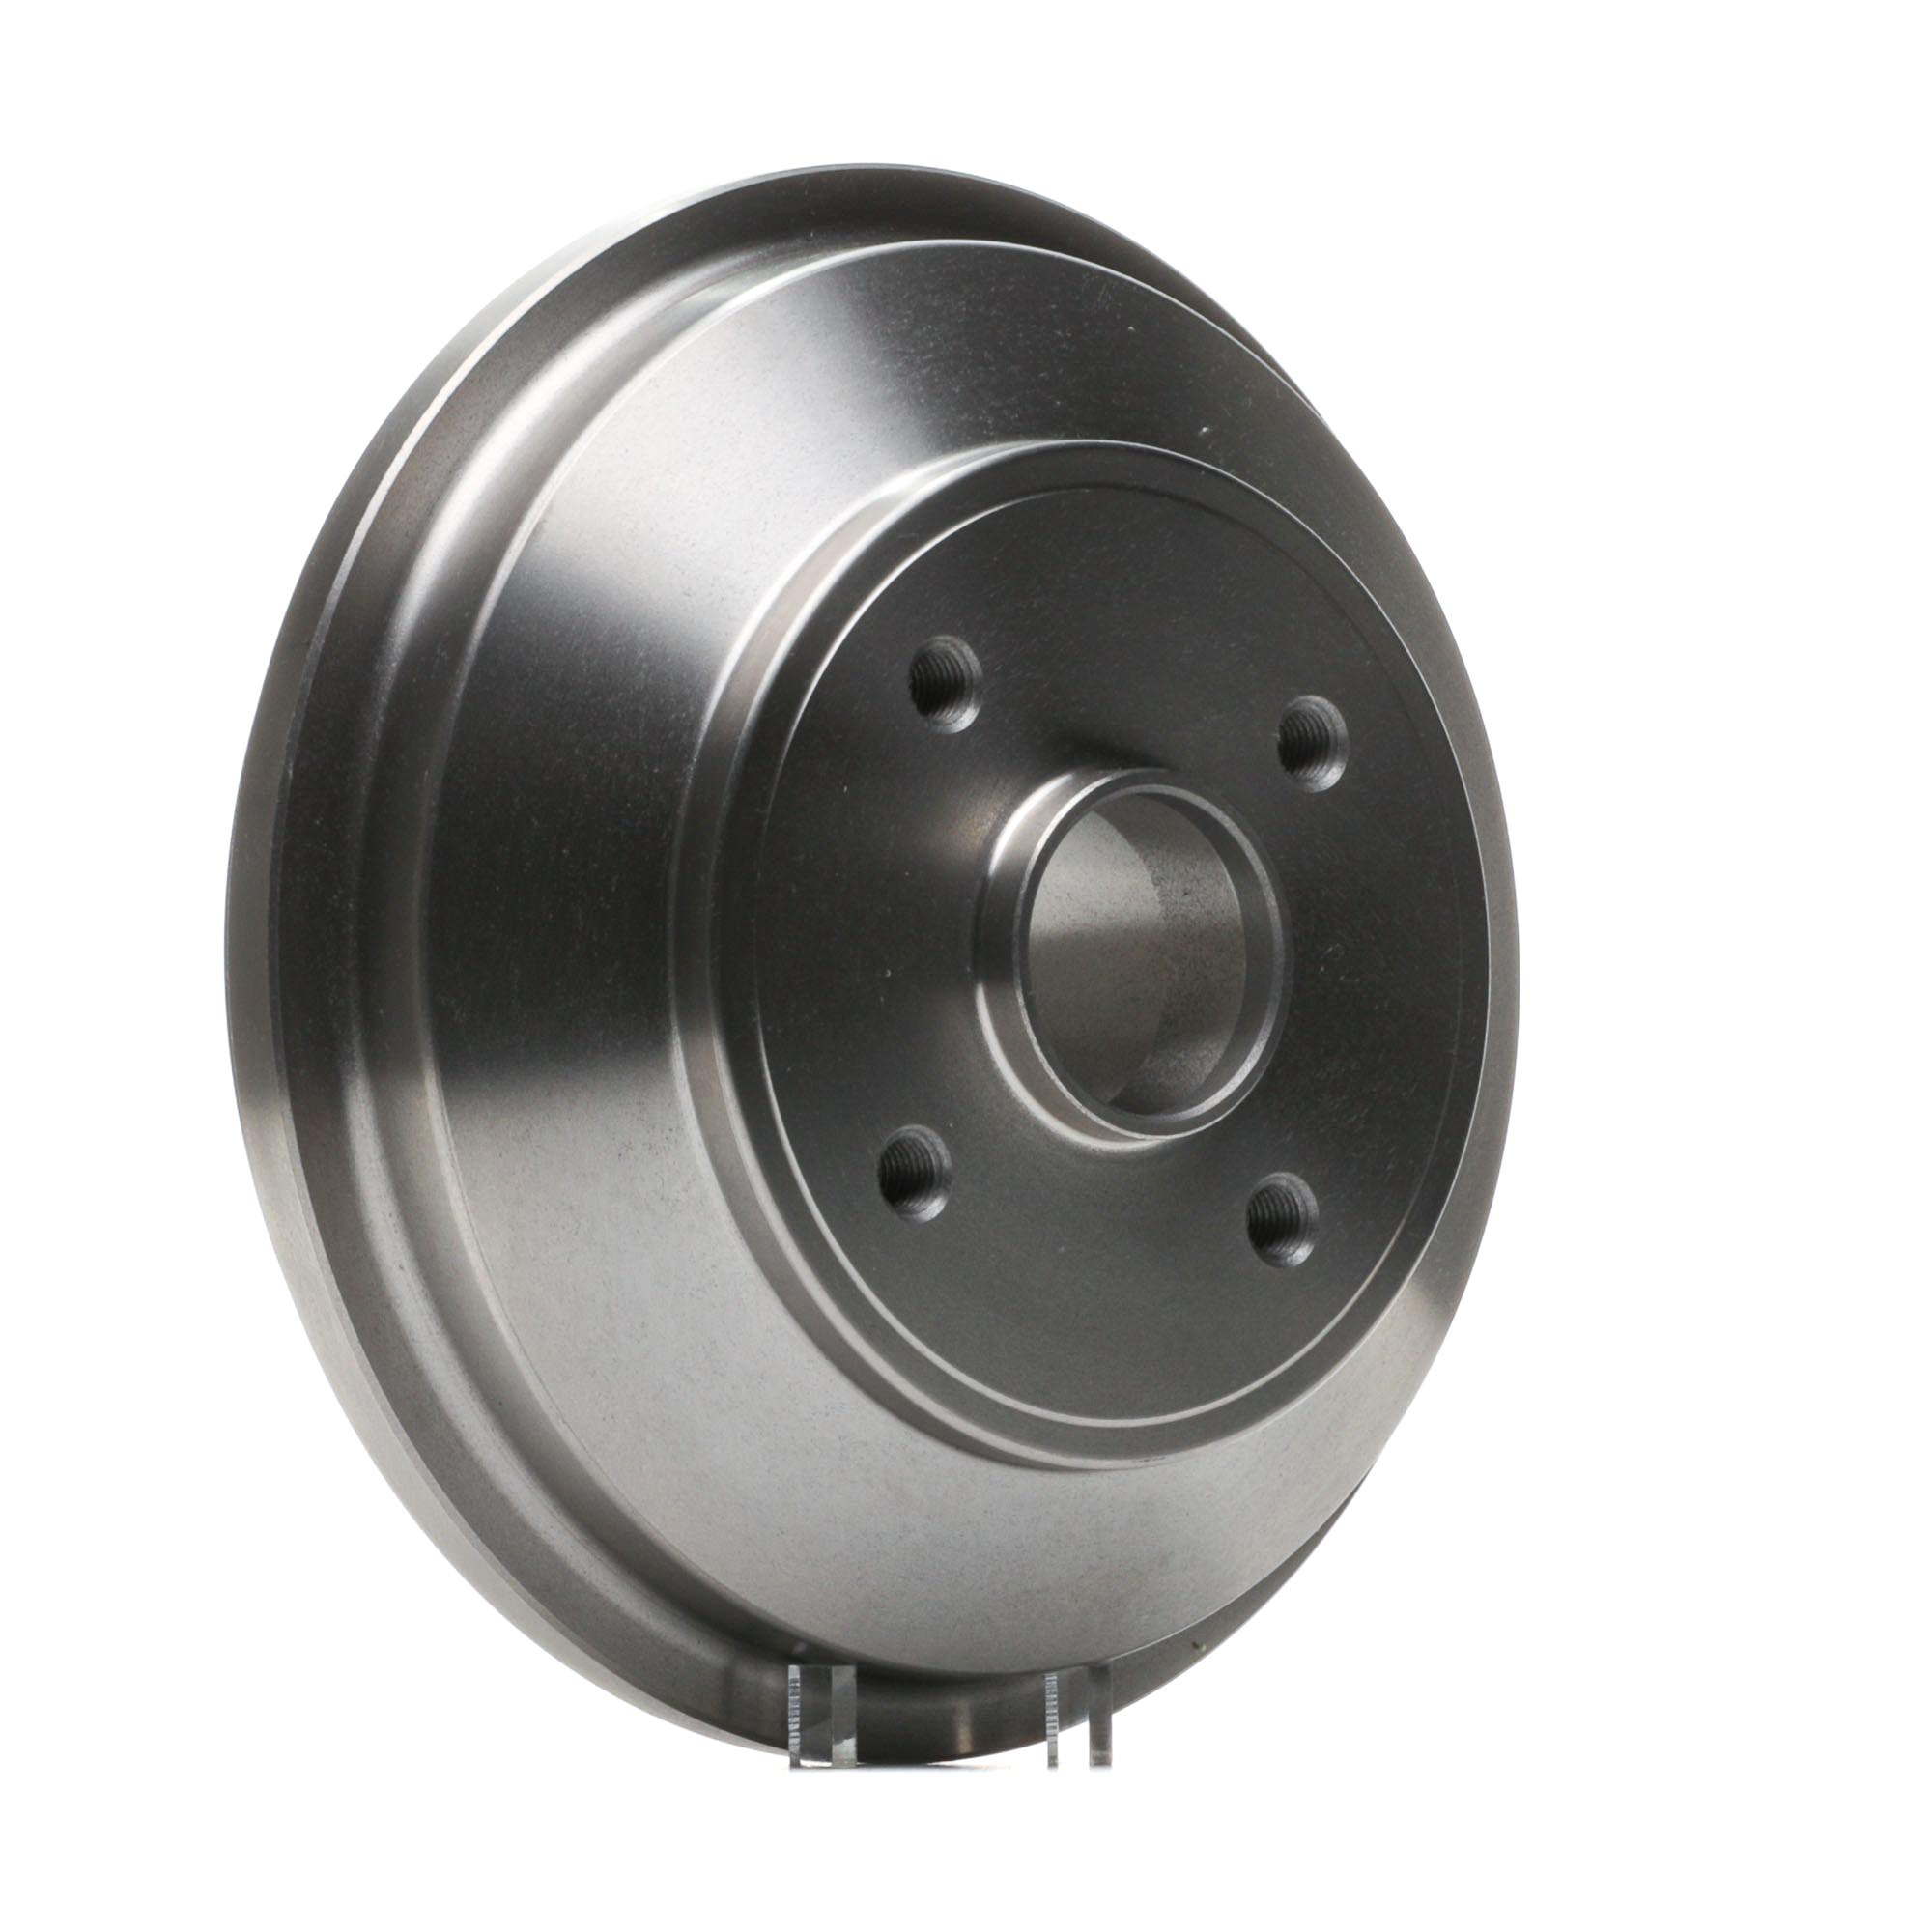 SKBDM-0800244 STARK Brake drum OPEL without wheel bearing, without wheel studs, with wheel hub, without ABS sensor ring, 238mm, Rear Axle